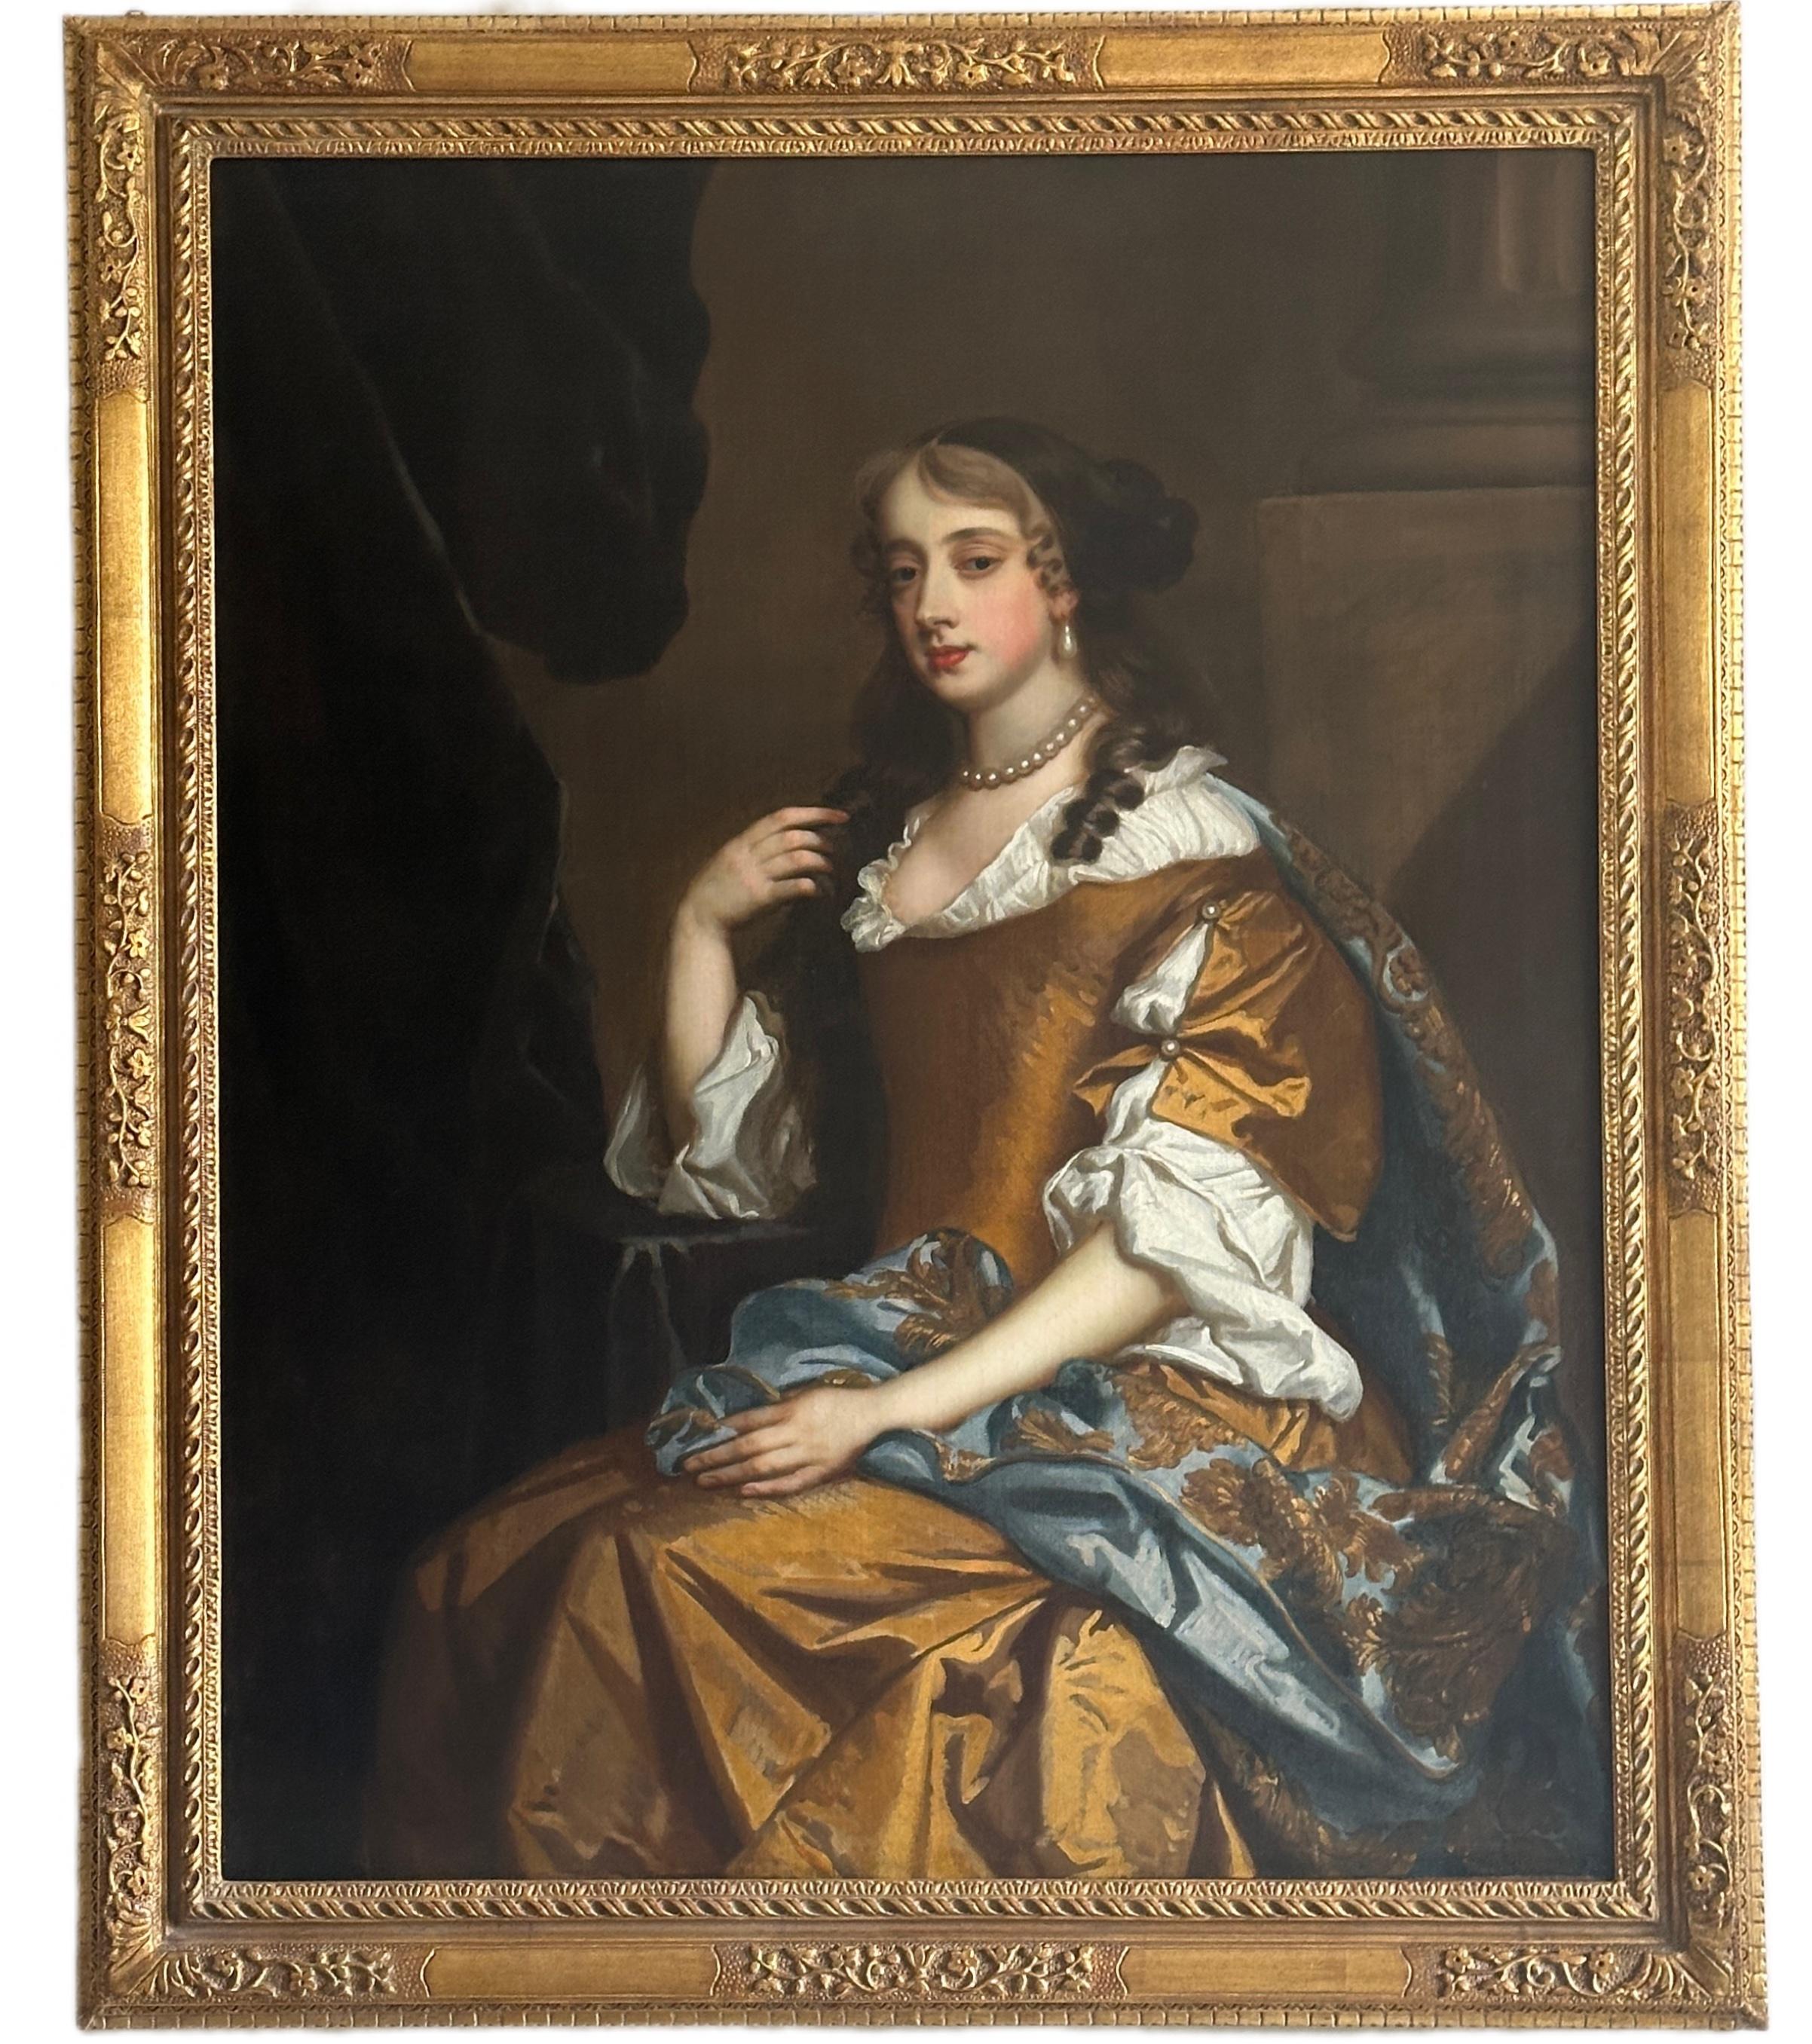 Studio of Peter Lely Portrait Painting – Porträt einer sitzenden Dame in einem Innenraum aus dem 17. Jahrhundert